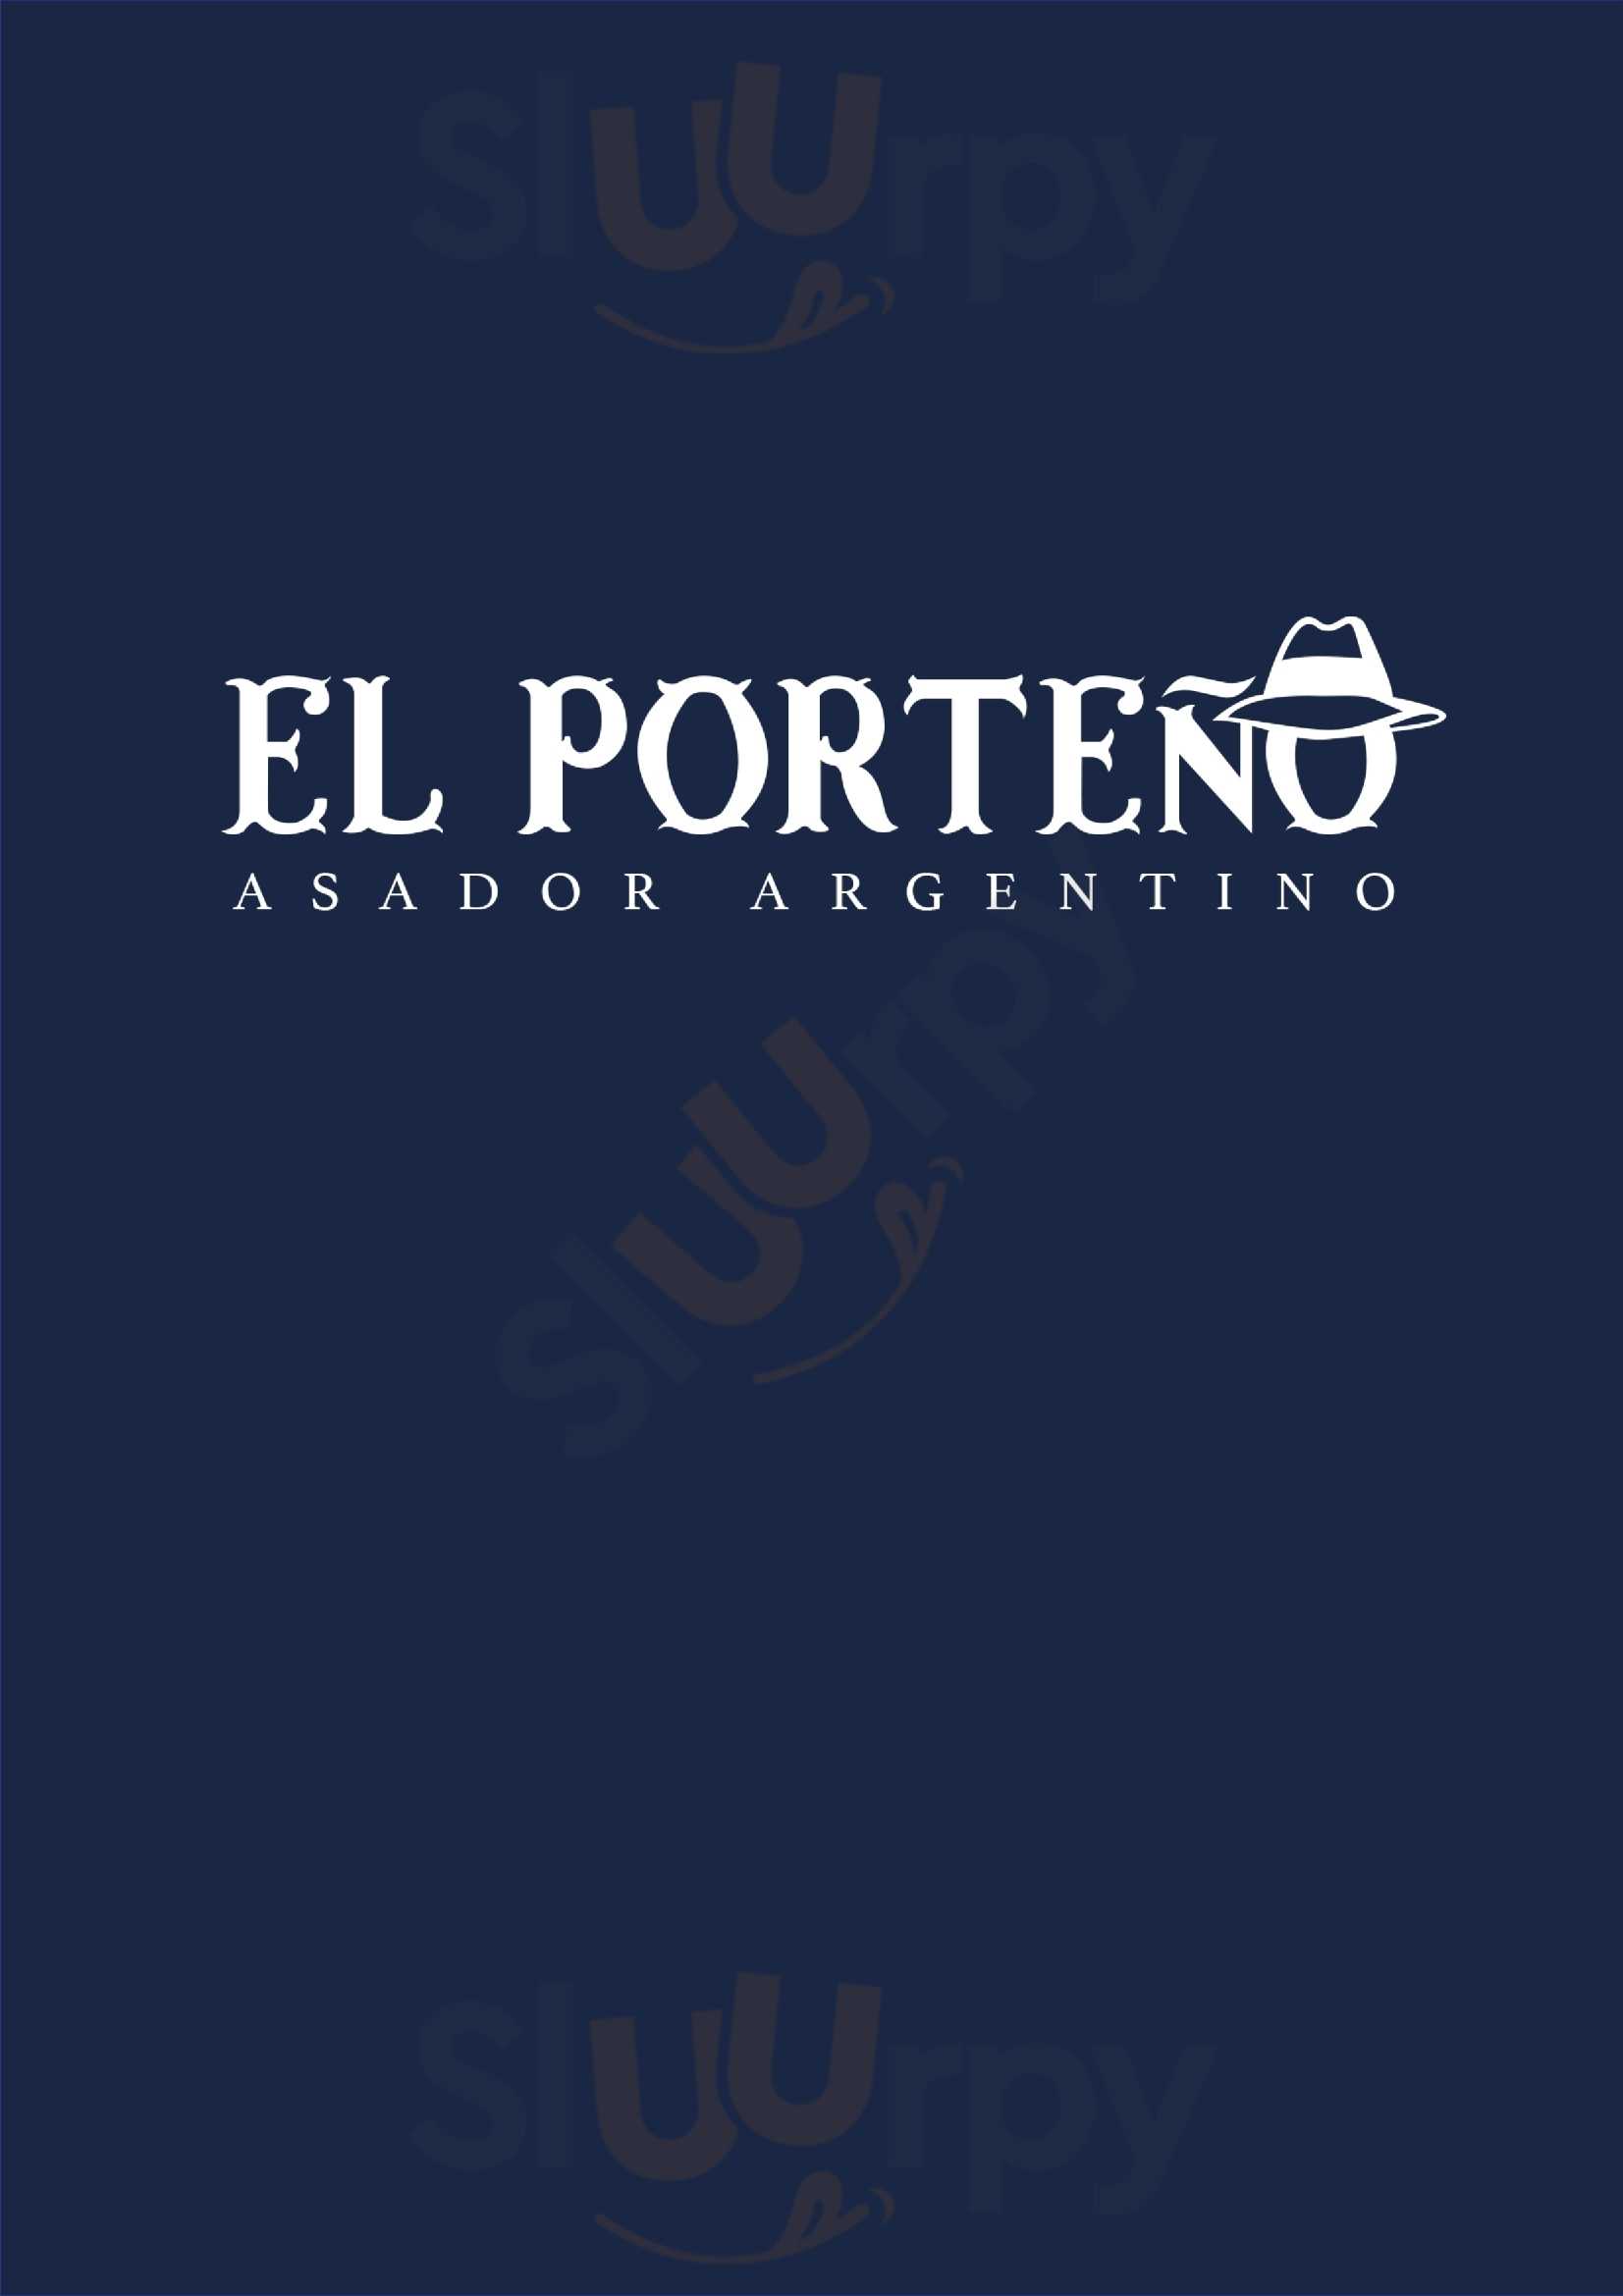 El Porteño Asador Argentino Valencia Menu - 1